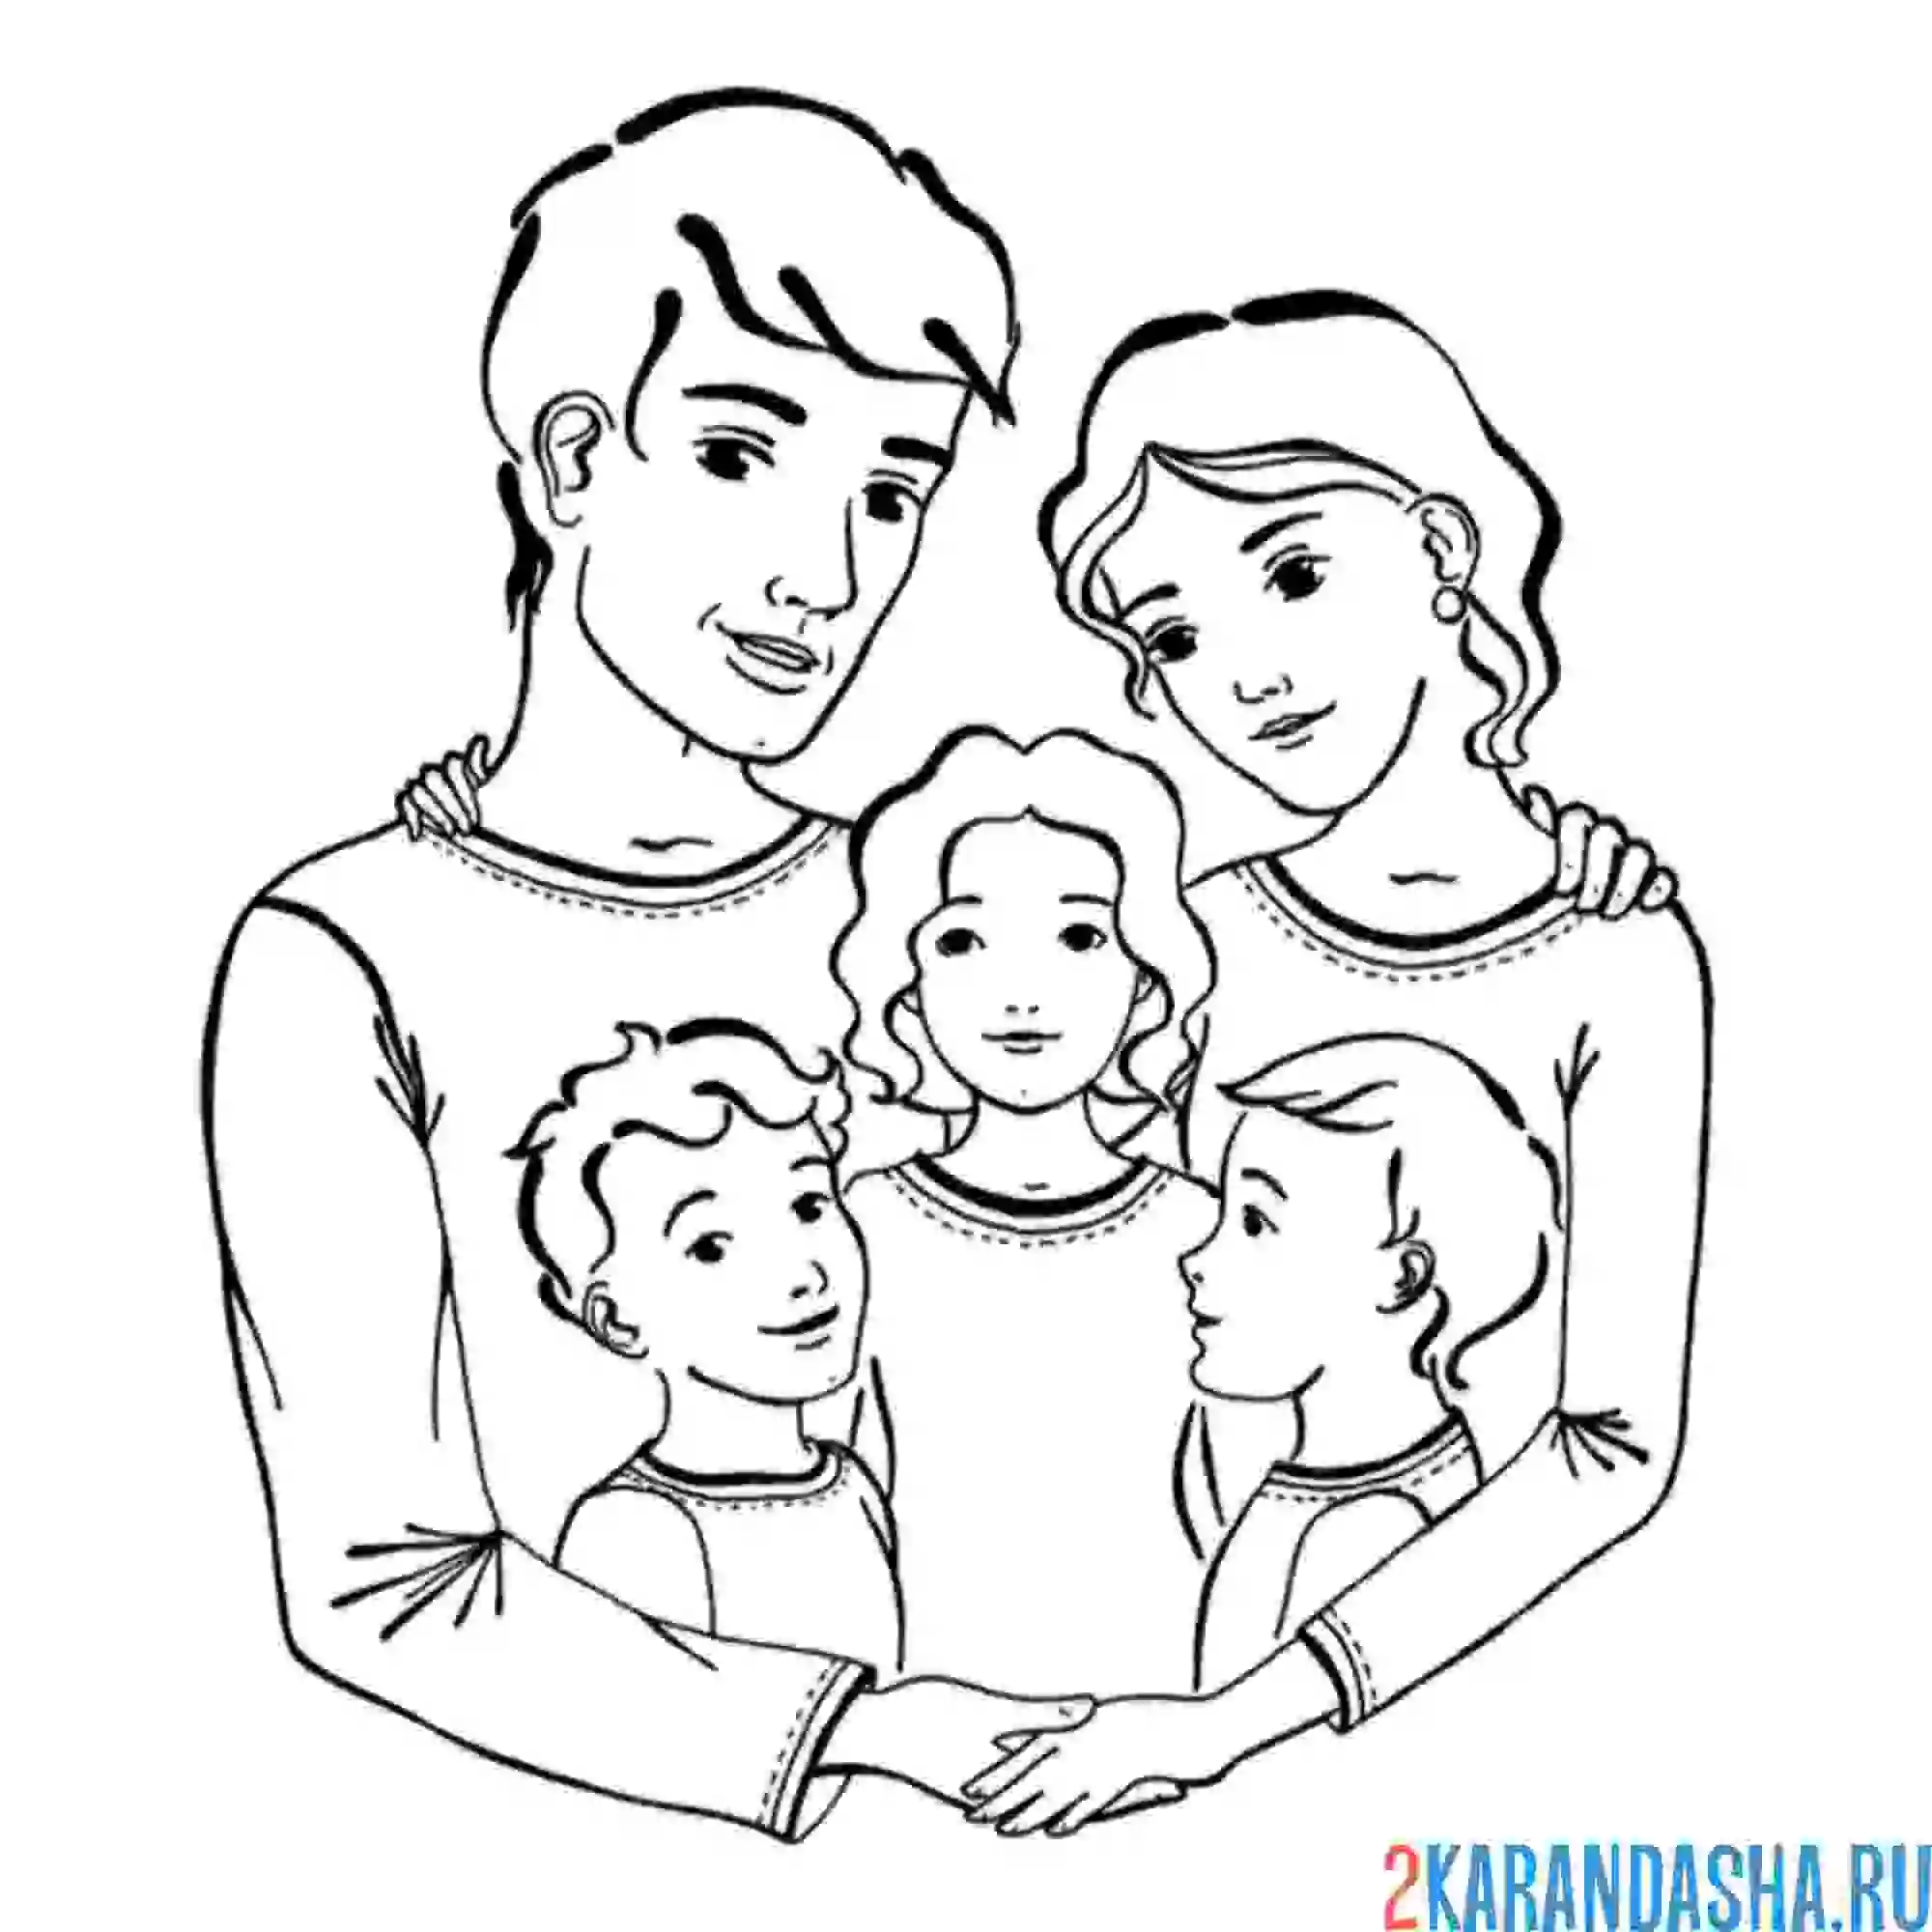 Картинки мамы папы брата сестры. Семья раскраска для детей. Семья рисунок. Контуры семьи для рисования. Рисунок семьи 3 человека.